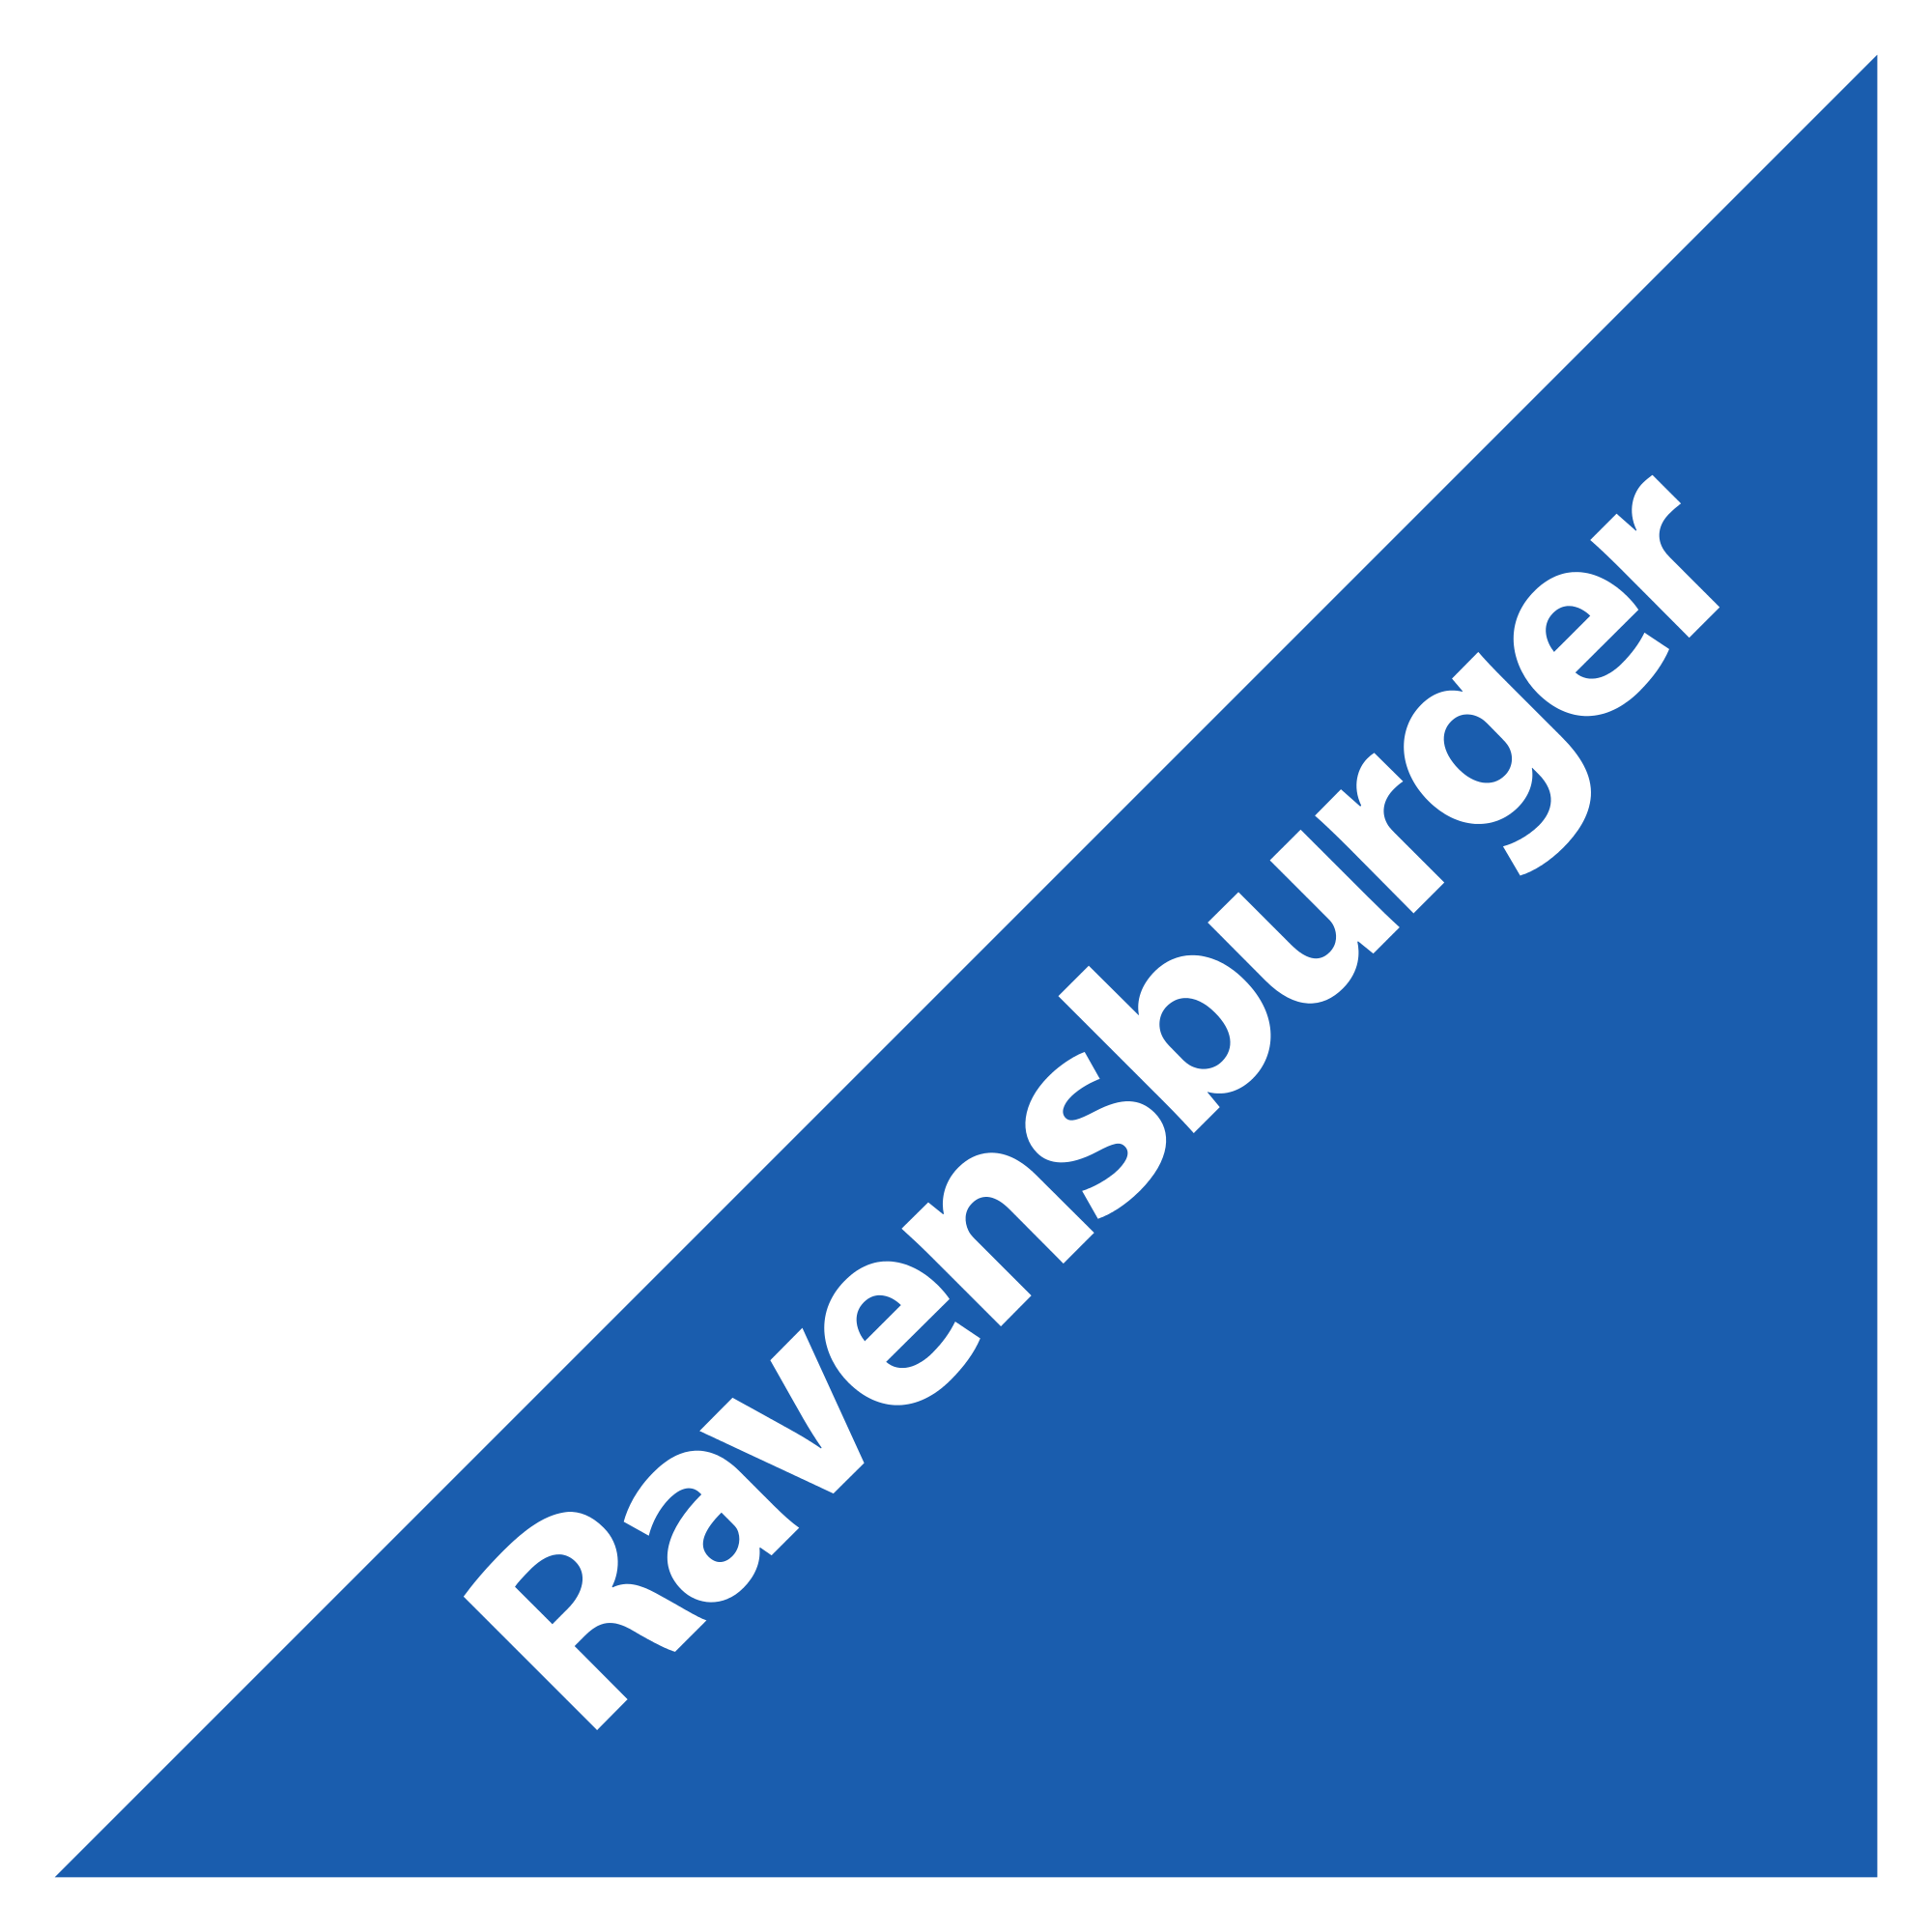 Ravensburguer